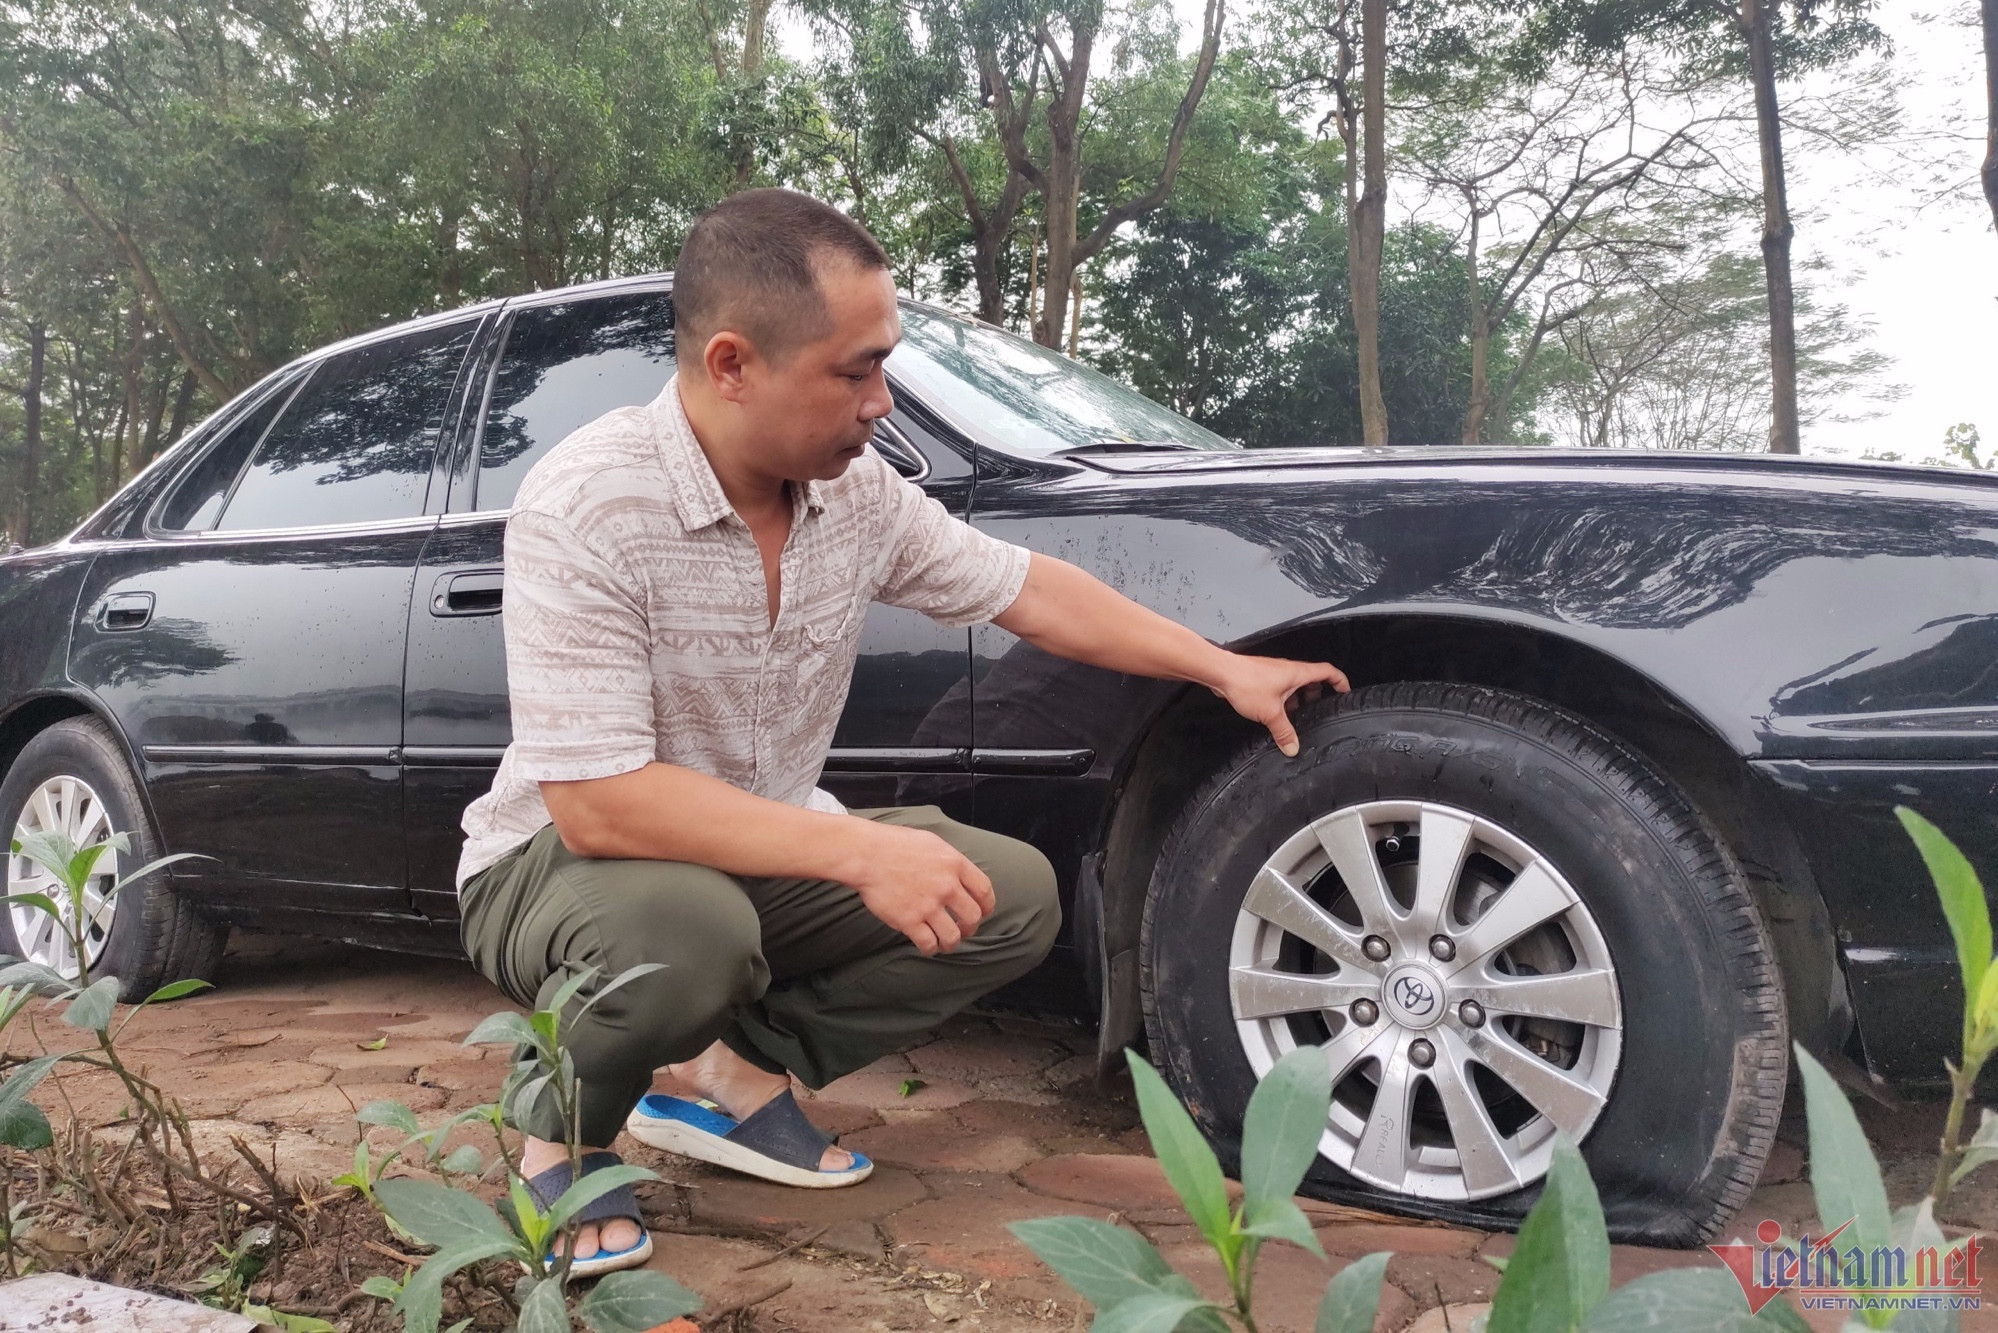 Hàng chục ô tô bị chọc thủng lốp ở Linh Đàm: Dấu hiệu hình sự khá rõ